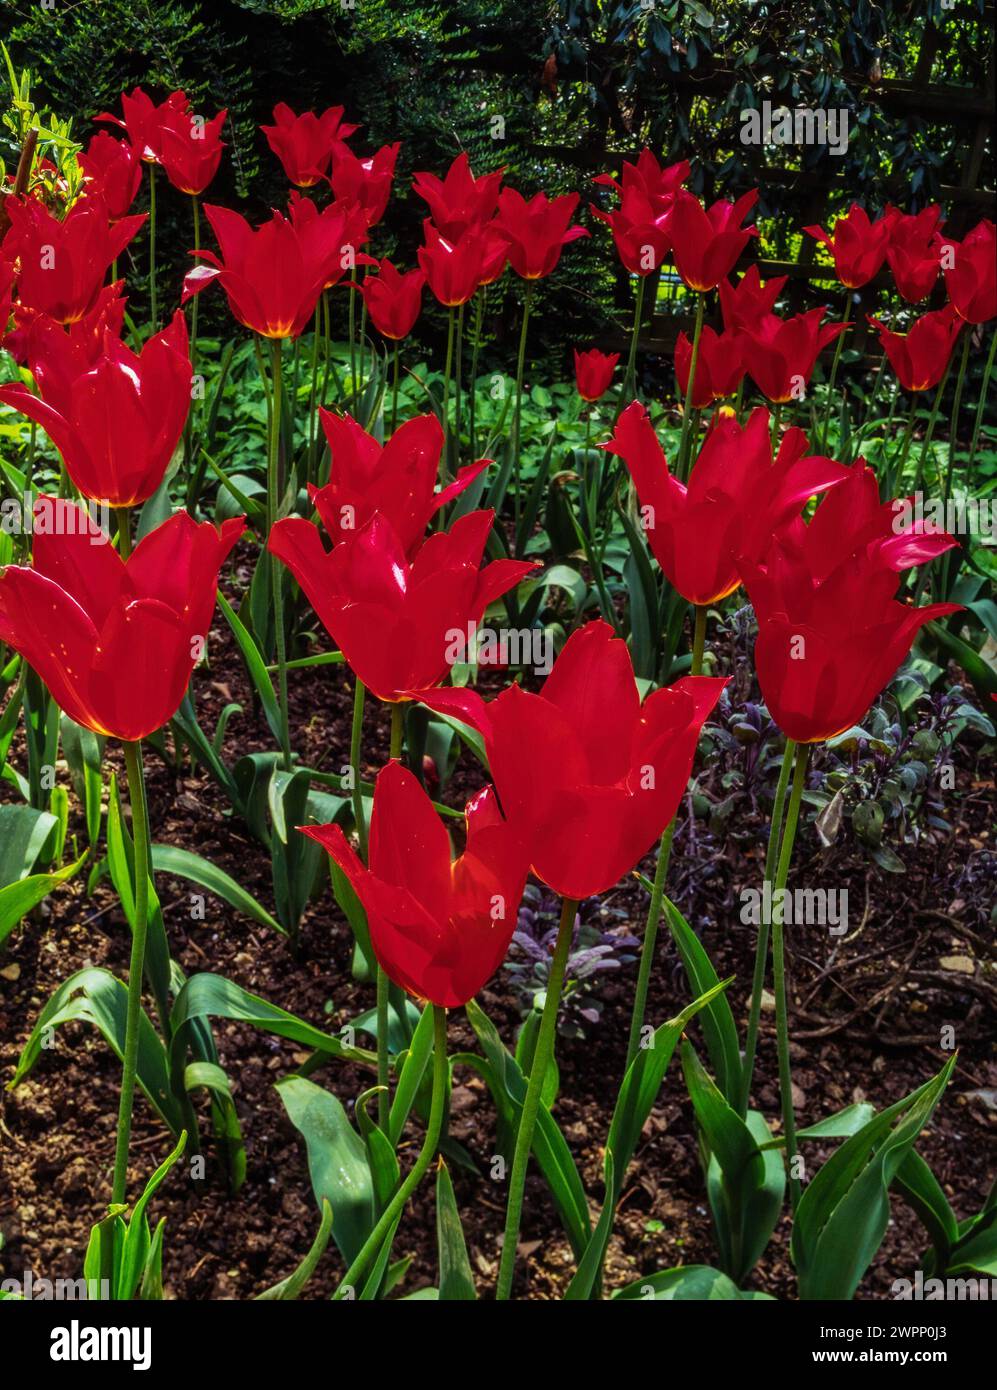 Fiori di tulipano rosso brillante e intenso, tulipani fioriti di giglio, che crescono nel giardino inglese in primavera, Inghilterra, Regno Unito Foto Stock